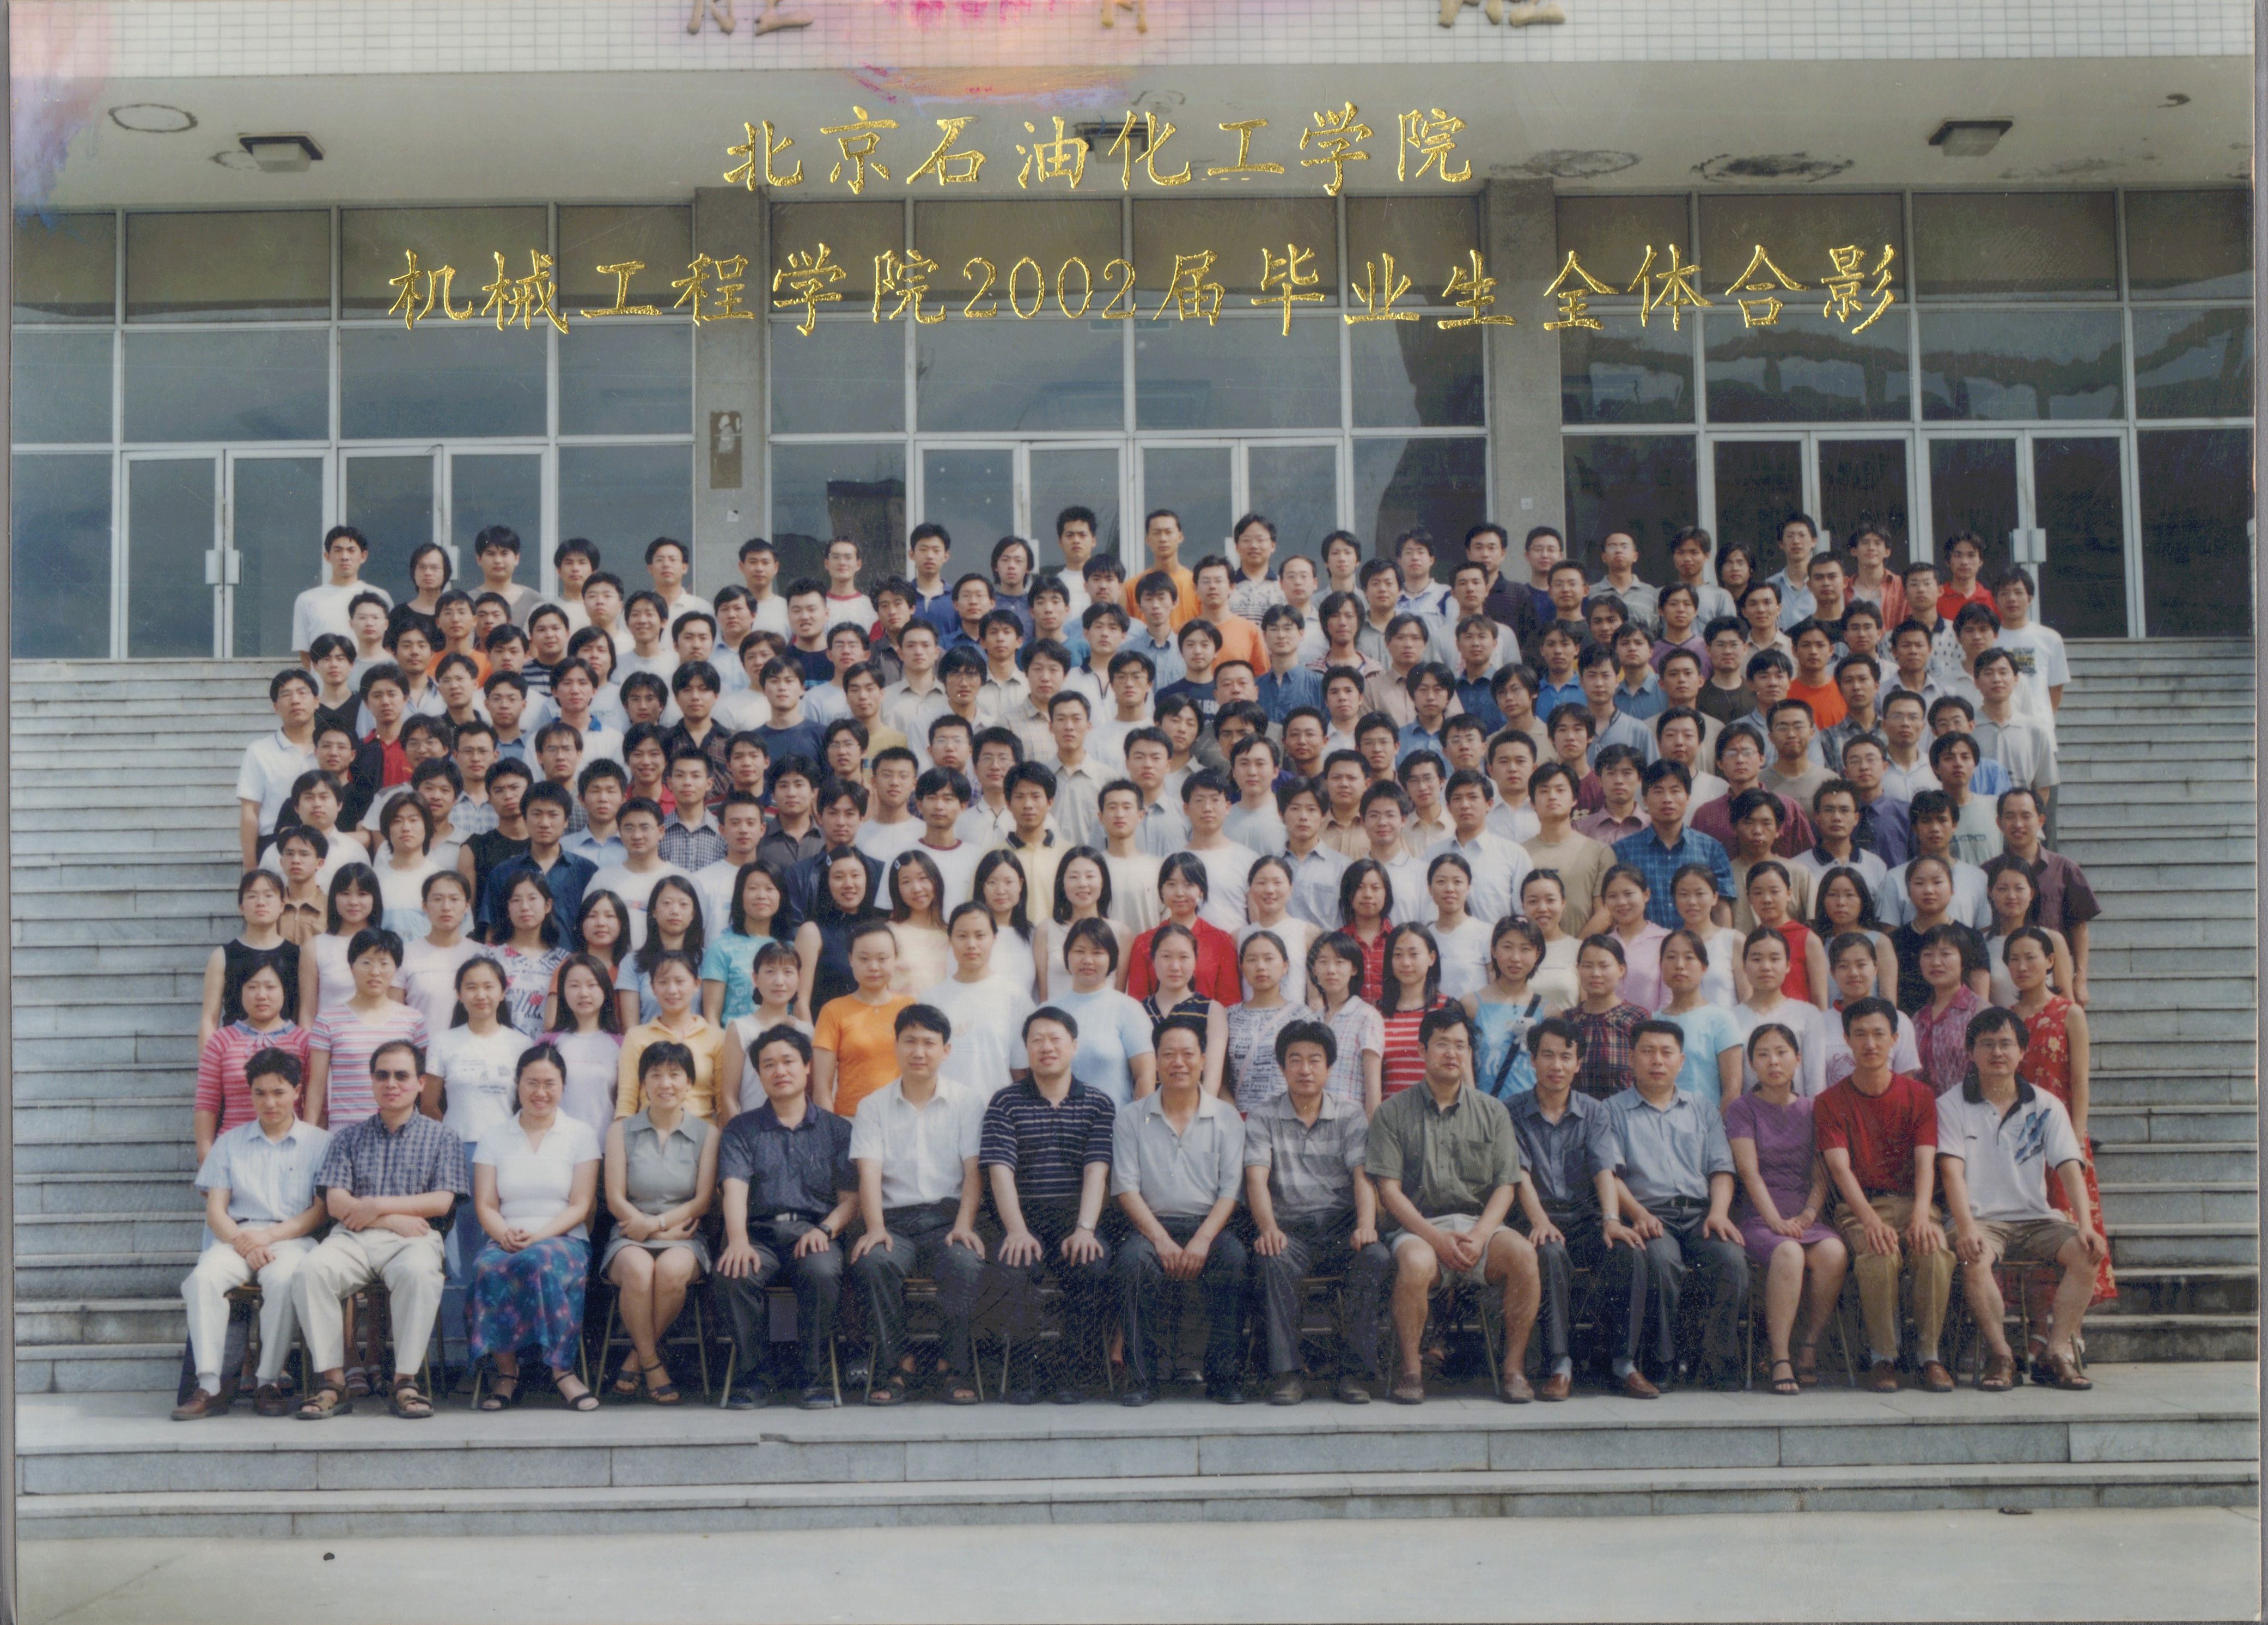 银河集团:198net有限公司机械工程学院2002届毕业照-1.jpg